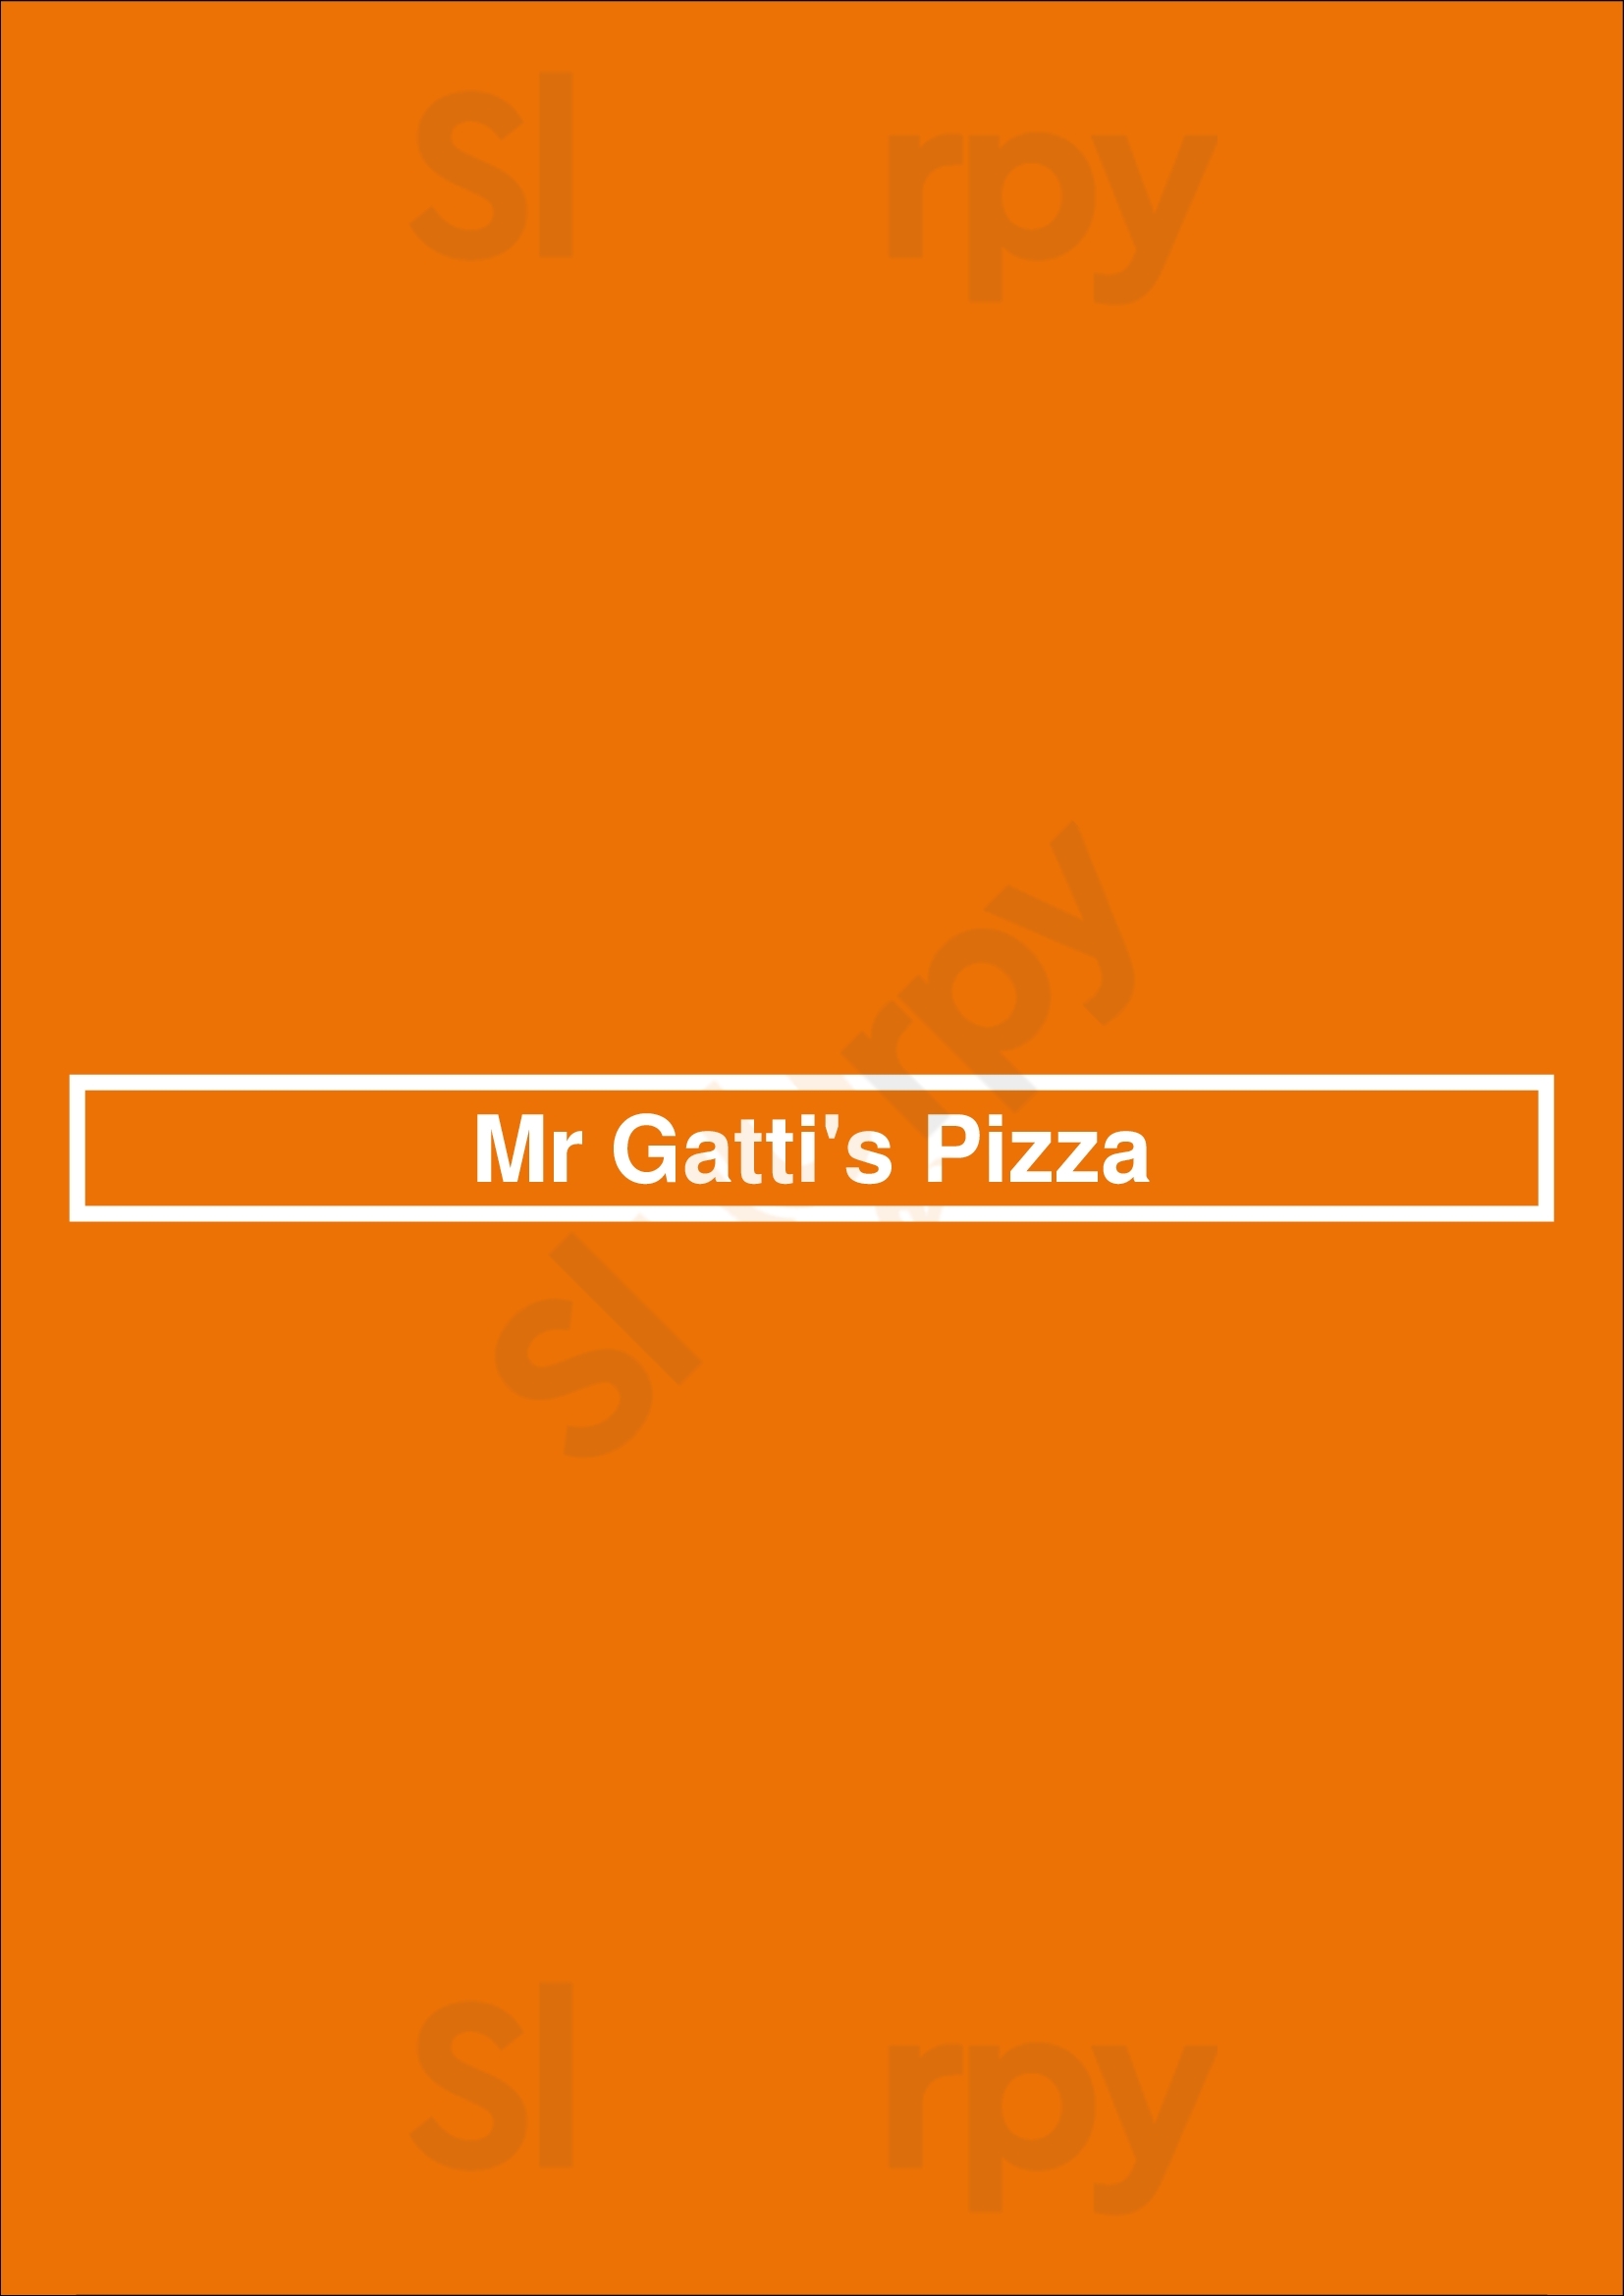 Mr Gatti's Pizza Austin Menu - 1